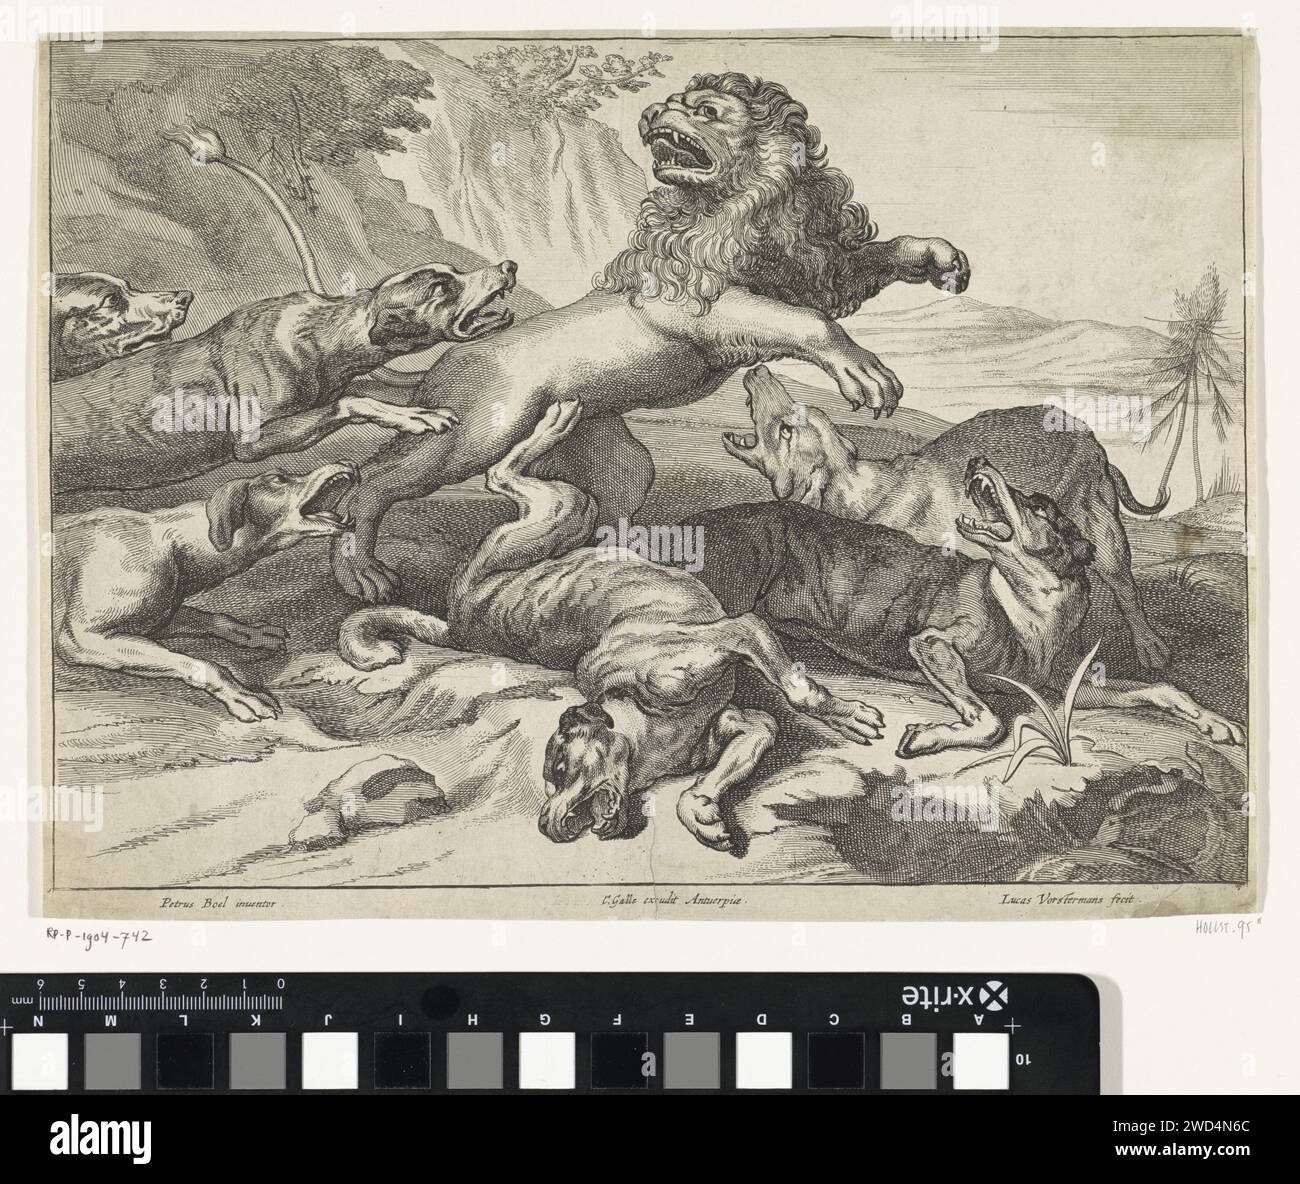 Les chiens attaquent un lion, Lucas Vorsterman (II), d'après Peeter Boel, 1651 - 1676 imprimer Anvers papier gravure bêtes de proie, animaux prédateurs : lion. chiens de chasse Banque D'Images